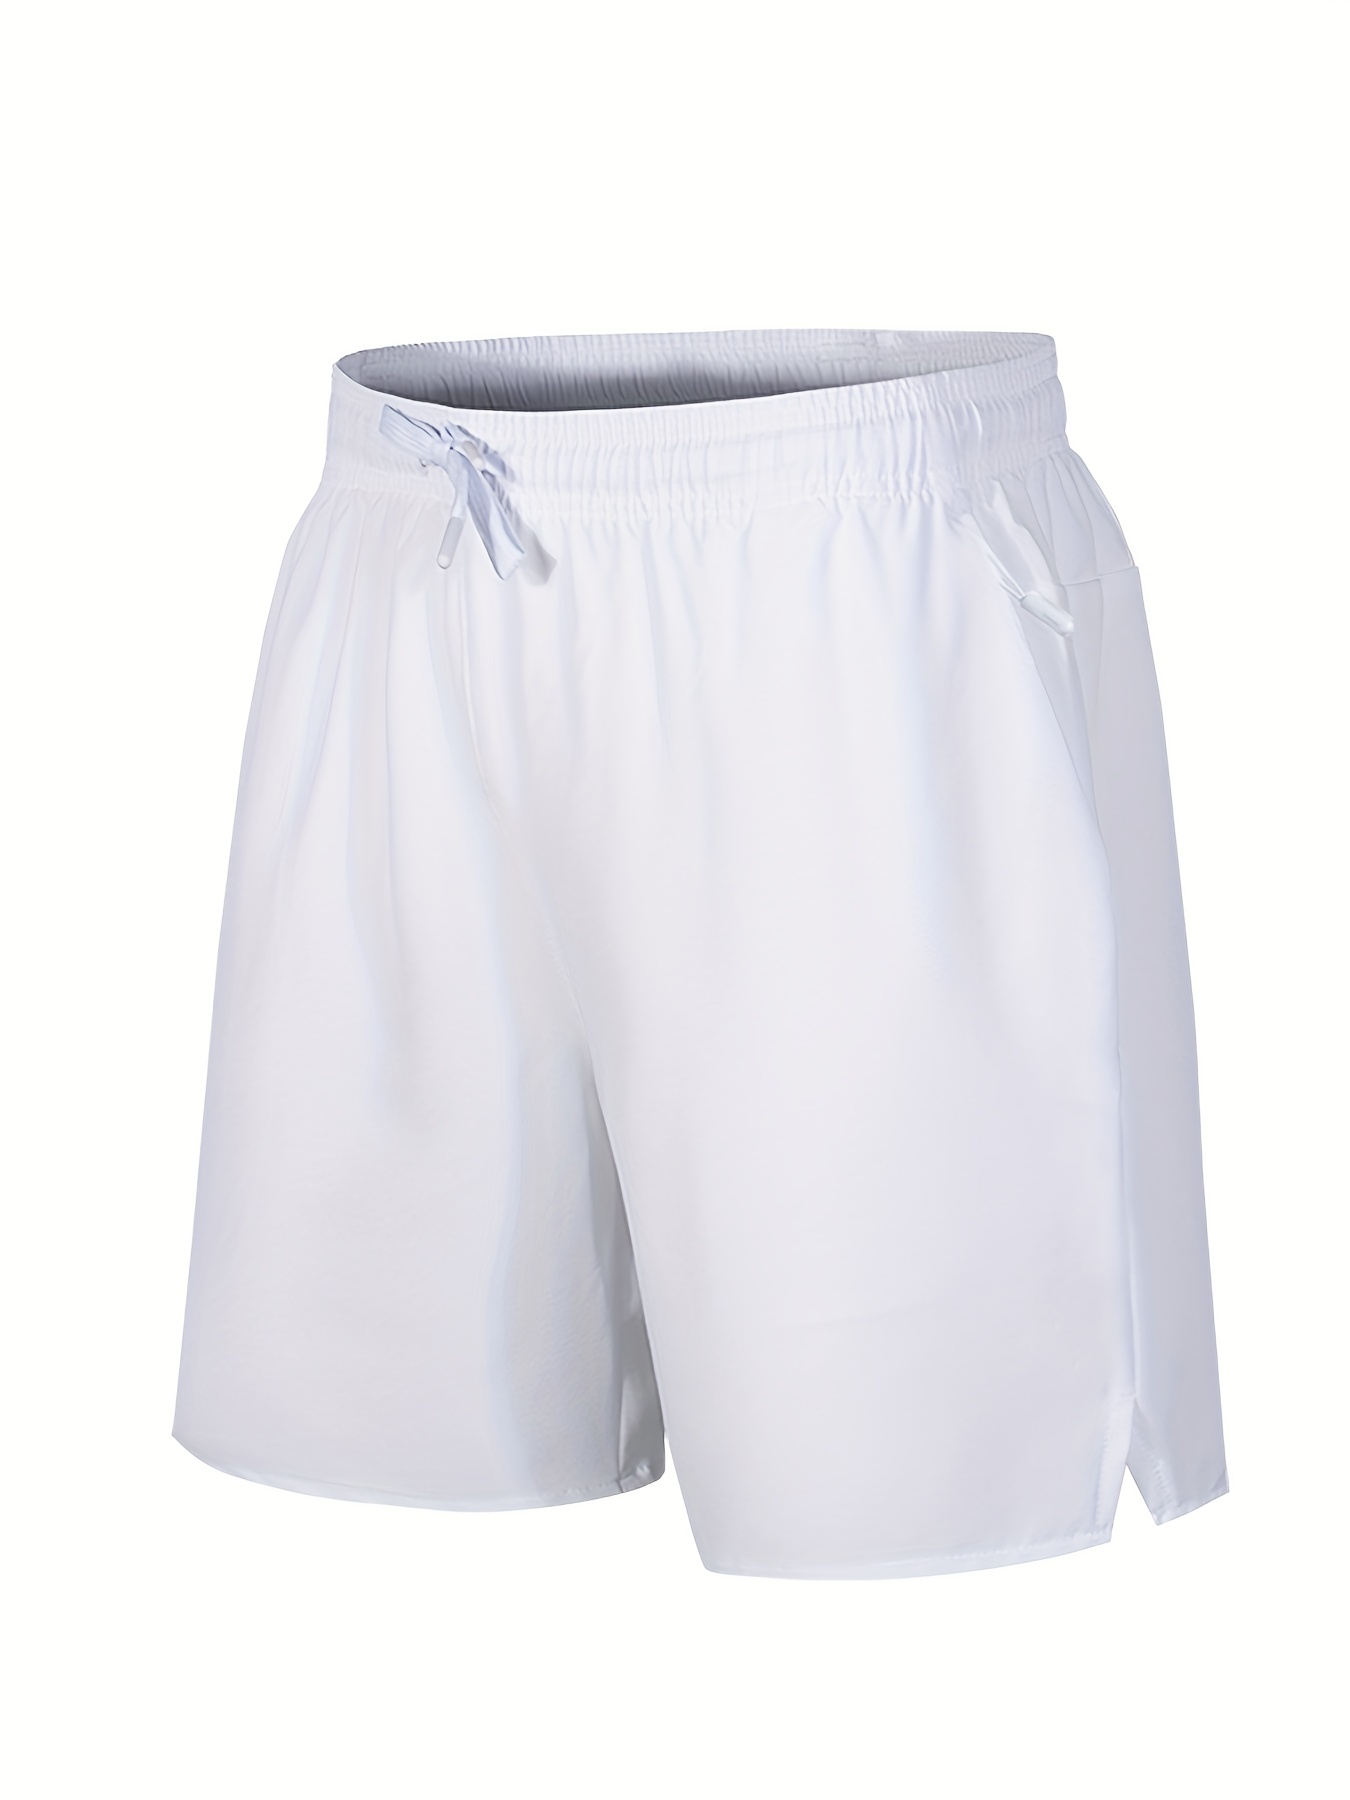 Men's Summer Half Pant Side Zipper Multi Side Pocket/High Qualitative Half  Pant for Men/black half pant for men by wiser